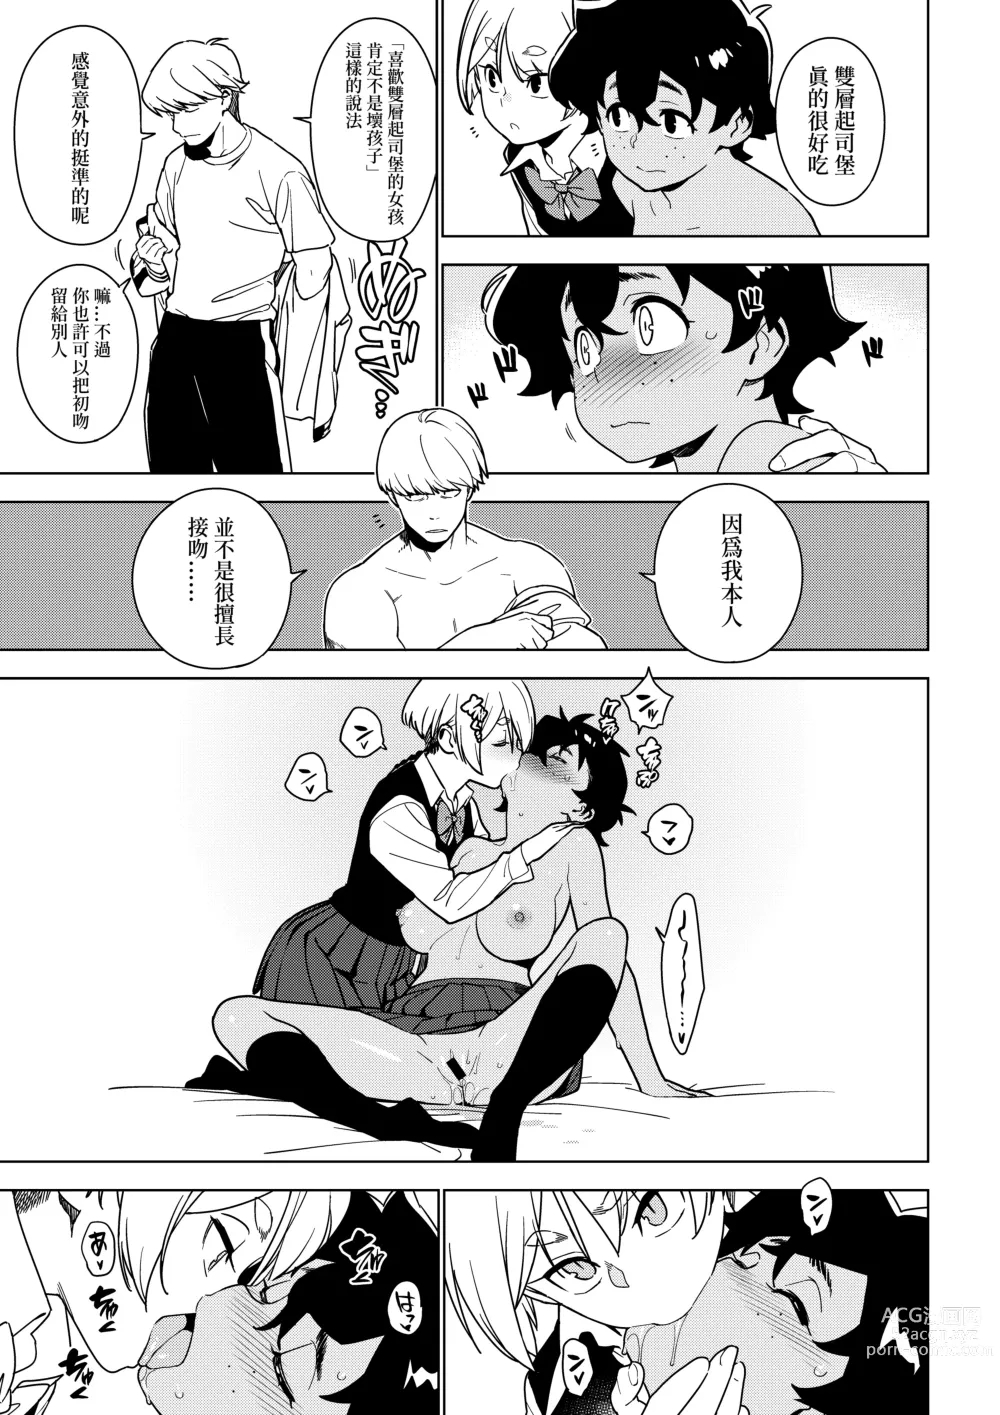 Page 14 of doujinshi Seiko